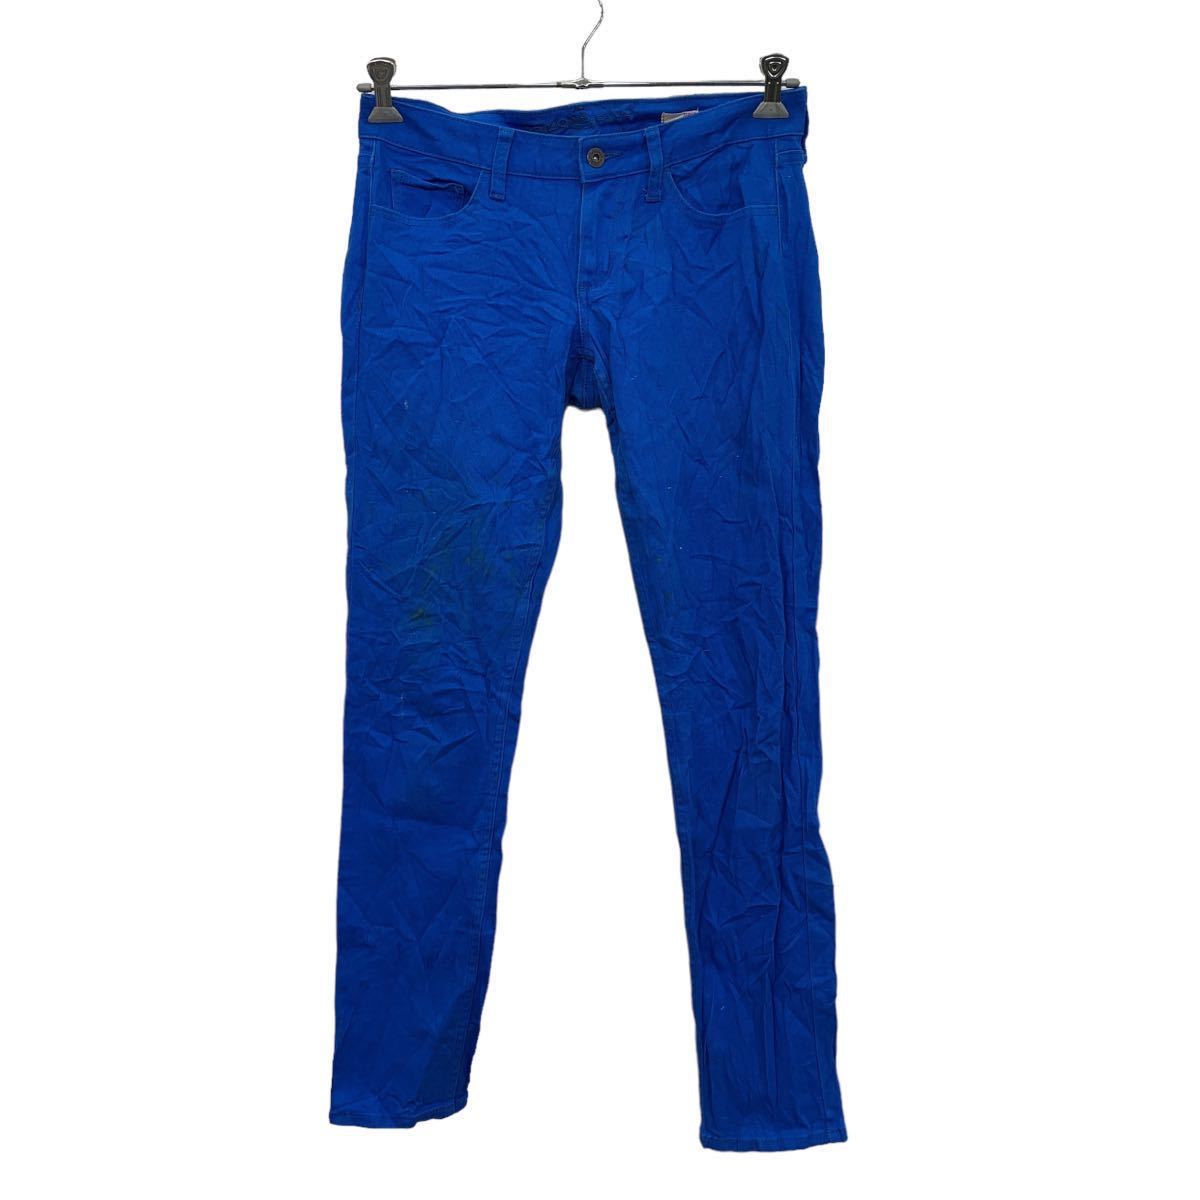 ARIZONA  Denim   брюки   W32 ...  голубой  супер  ...  бу одежда ...  Америка ... 2304-1934